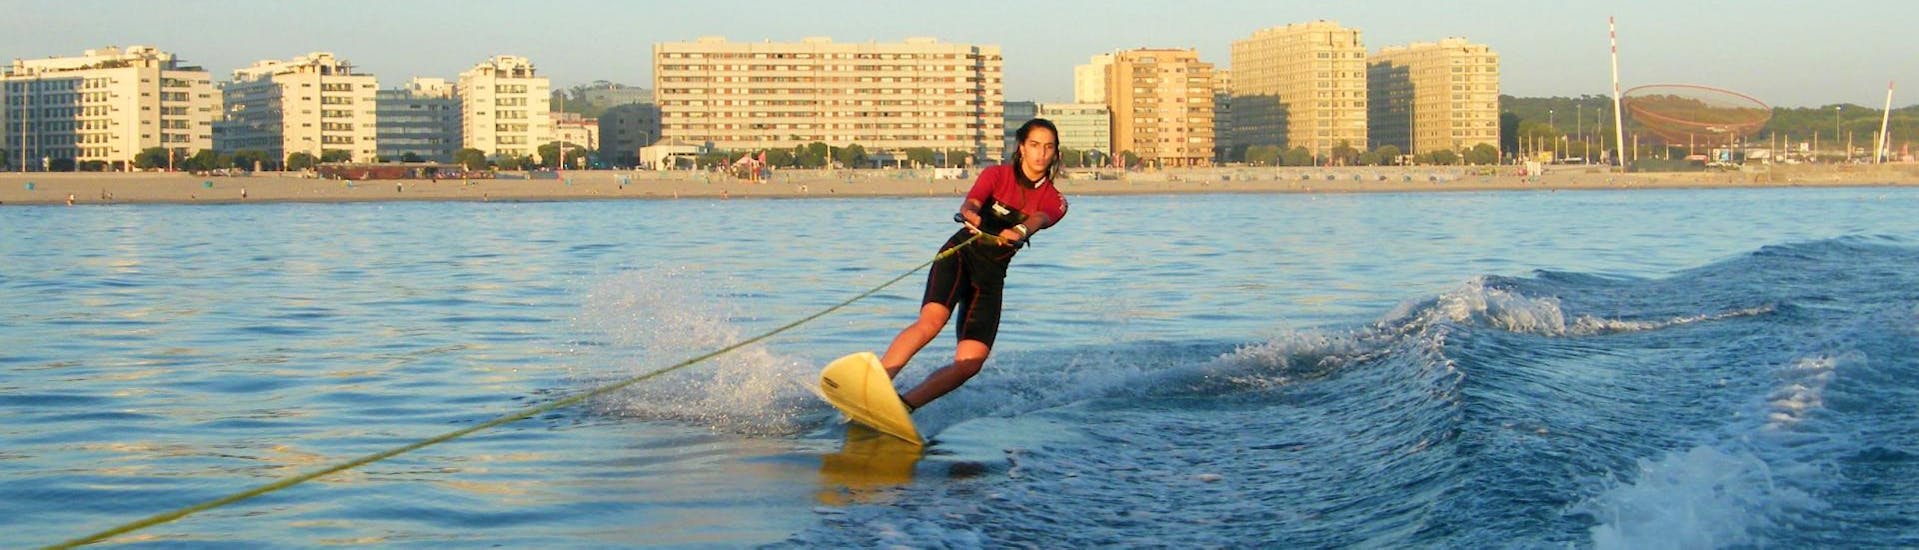 Pendant son cours privé de wakeboard & wakesurf, une femme s'adonne au wakesurf sous la supervision d'un moniteur qualifié de Surfaventura.